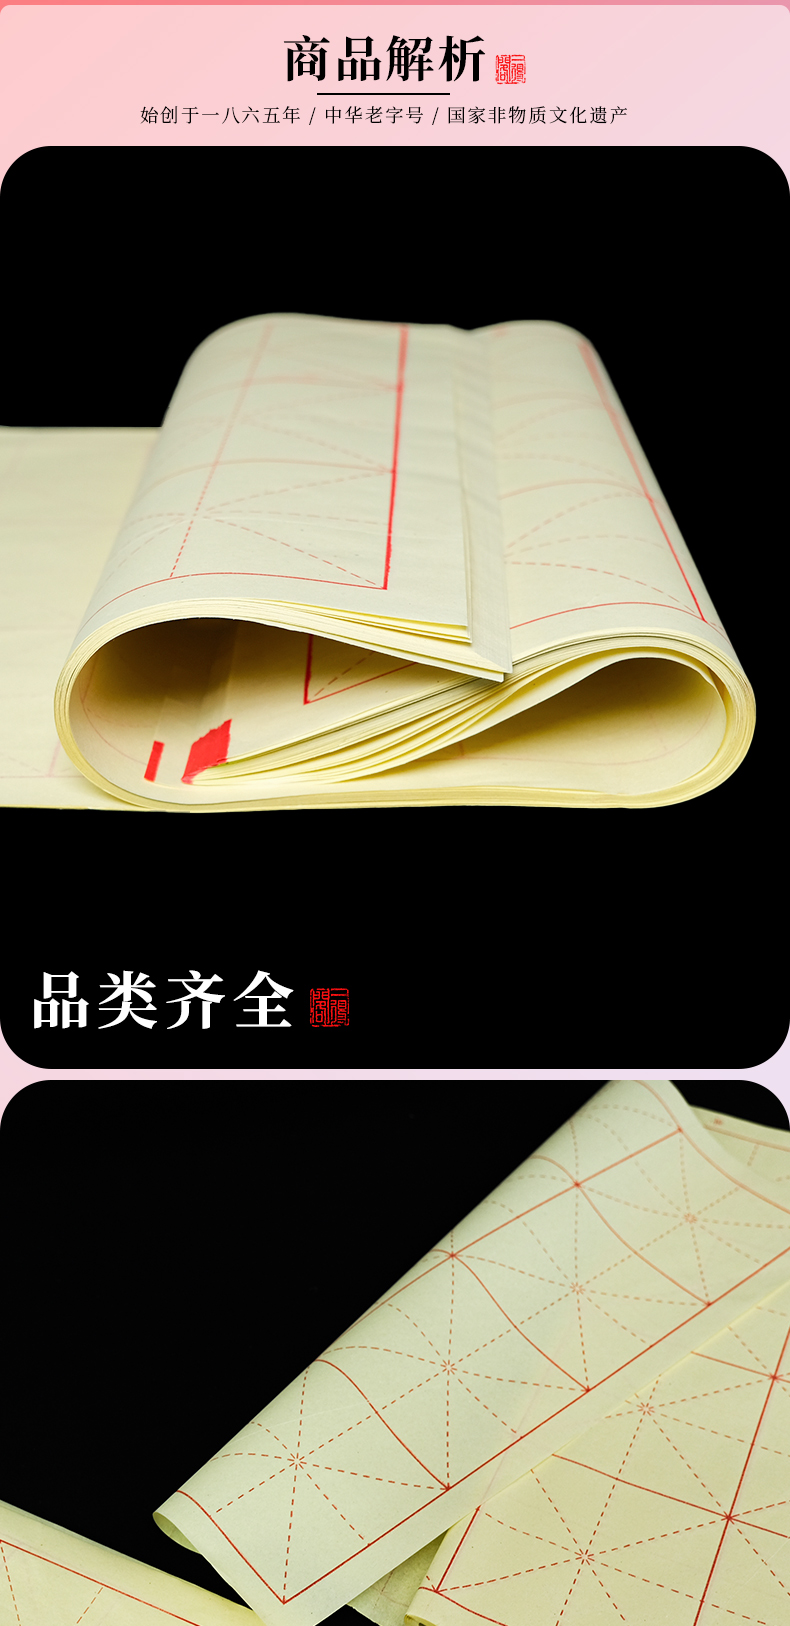 書法教學專用紙詳情_05.jpg